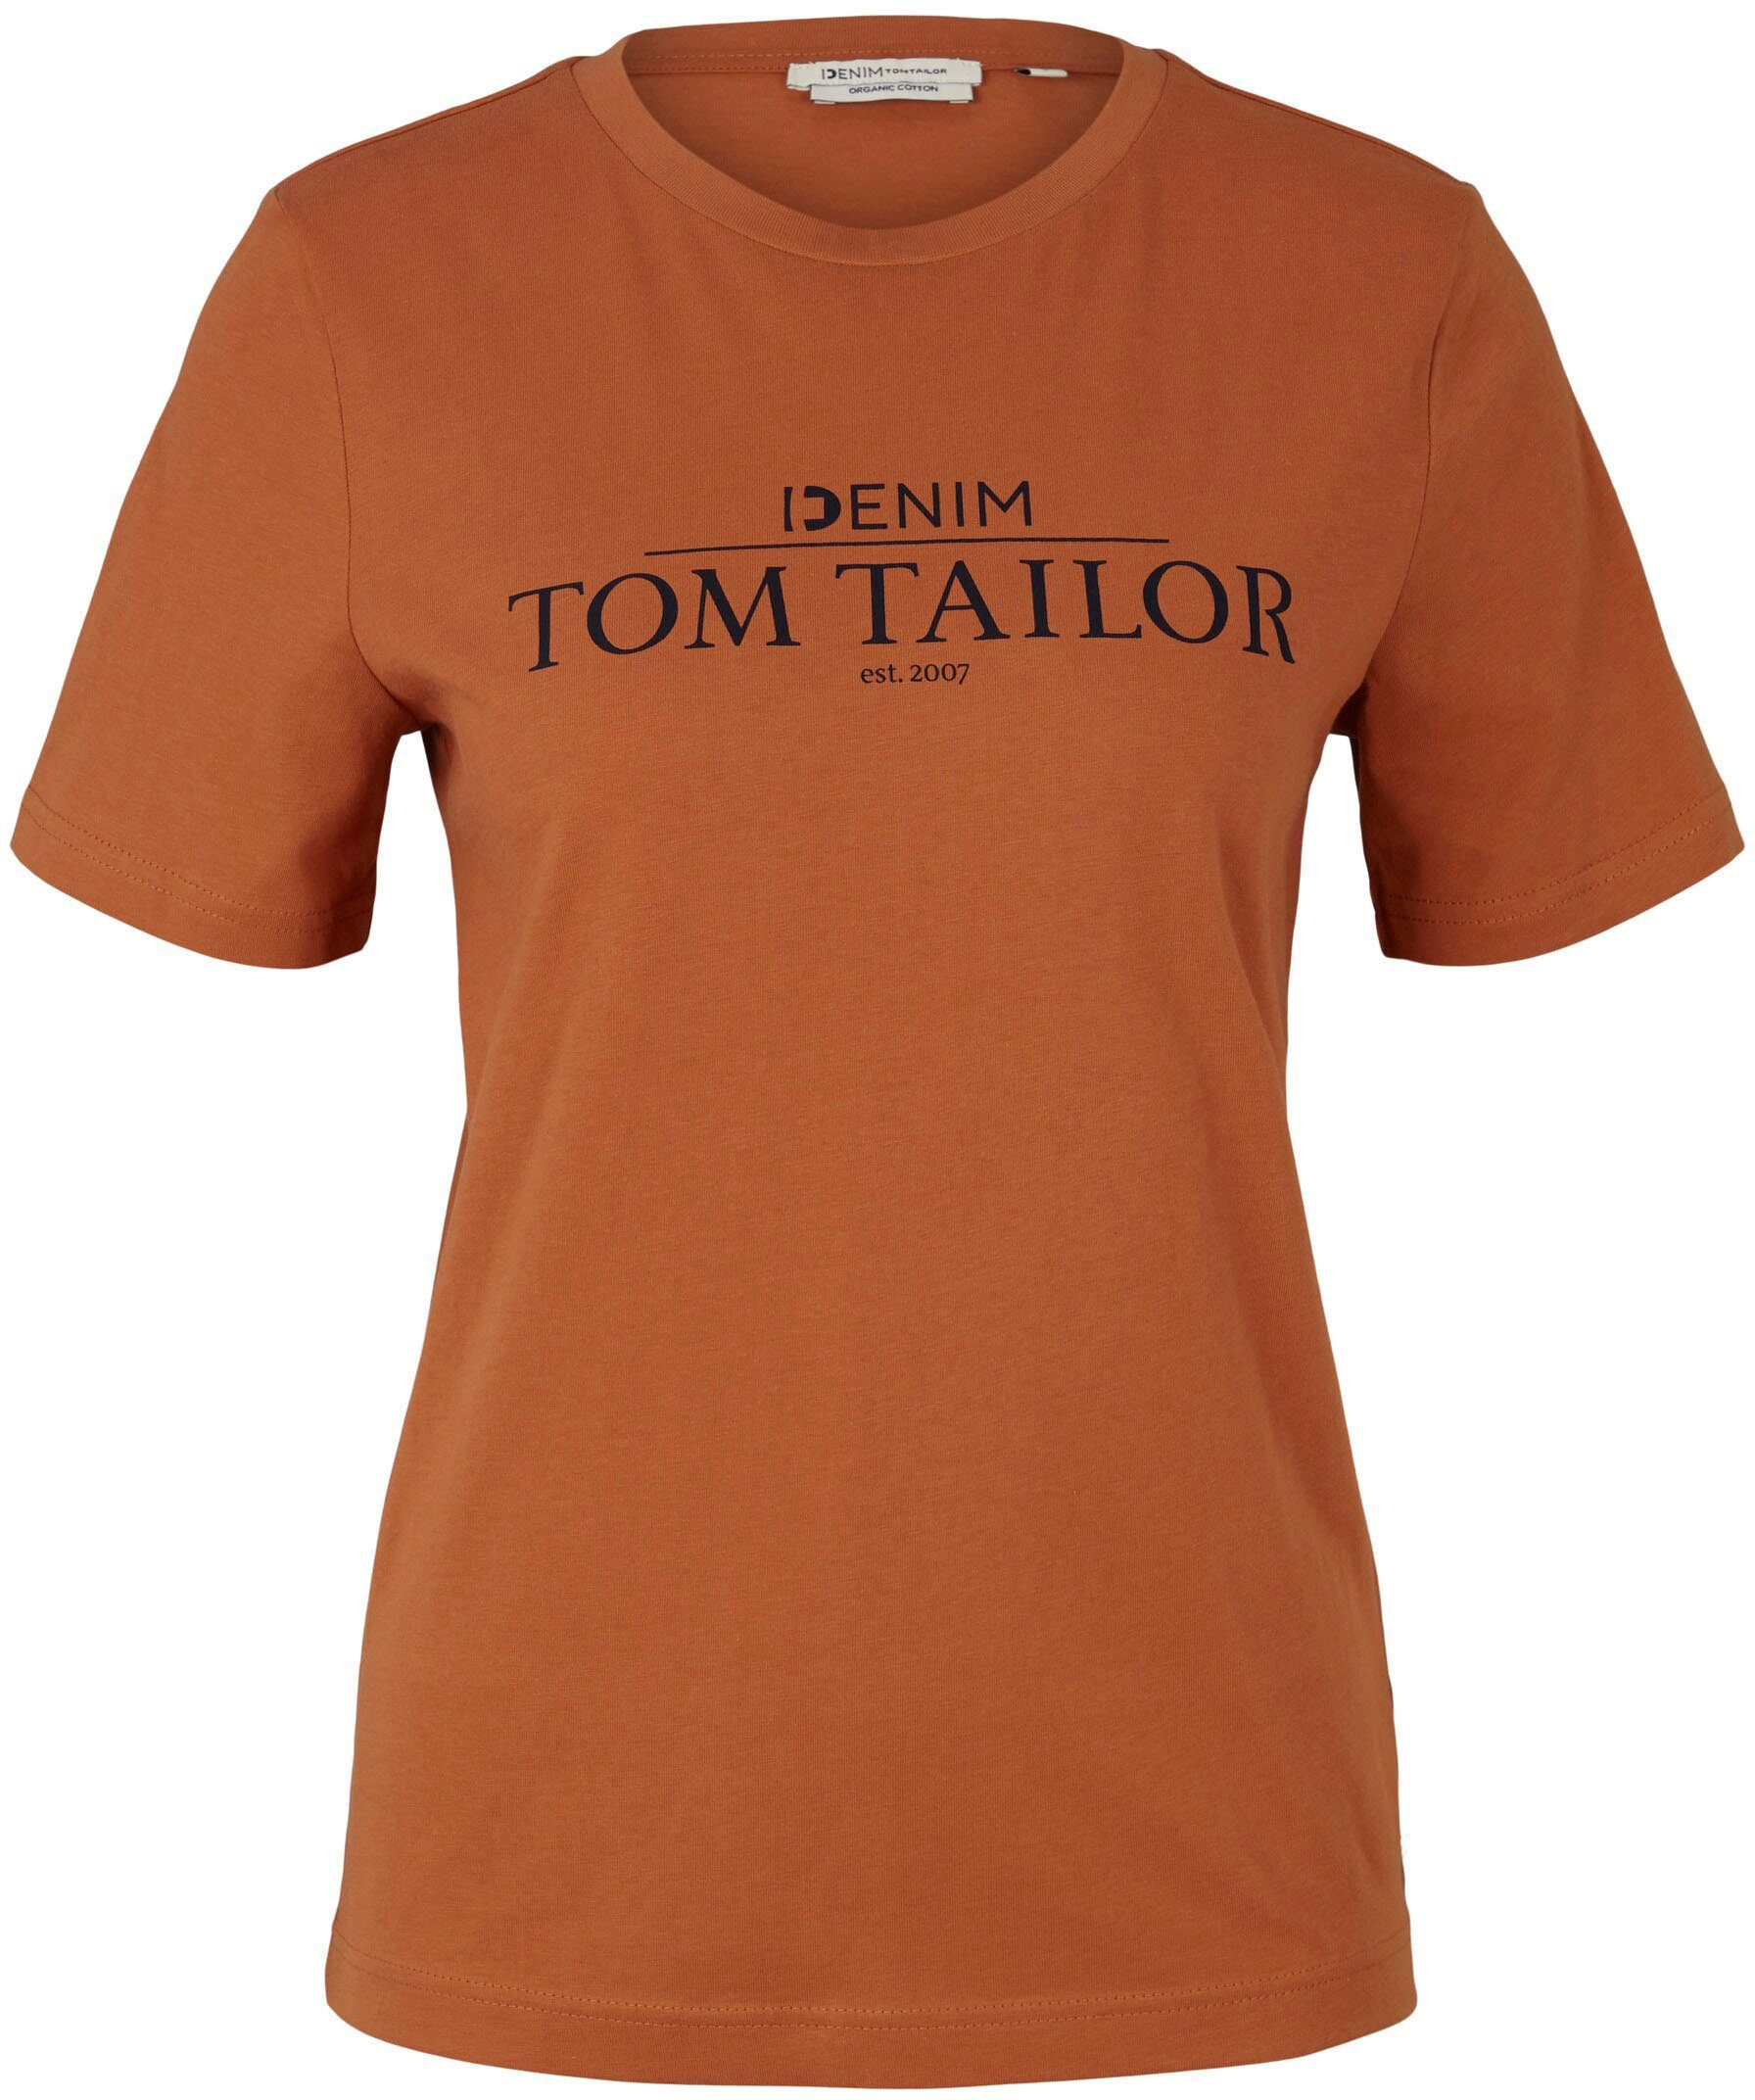 Aktuelle Modeinformationen TOM TAILOR Denim T-Shirt mit Logo auf amber Brust der Print